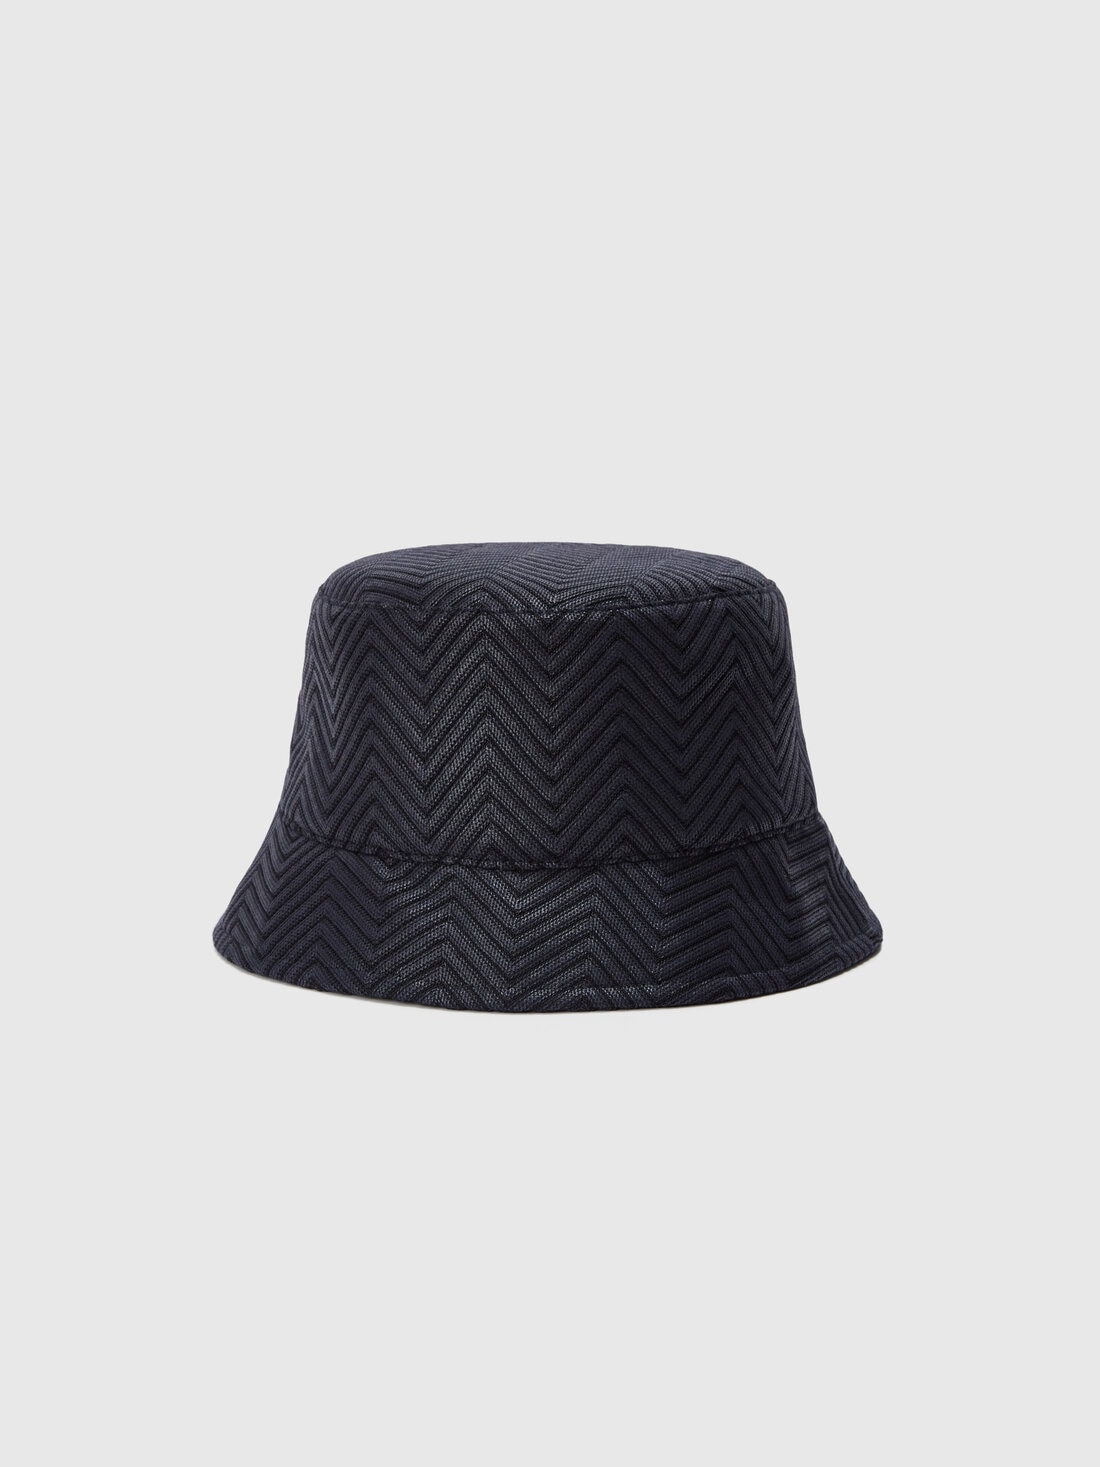 Bucket hat in cotton and viscose chevron, Multicoloured  - 8053147141268 - 0